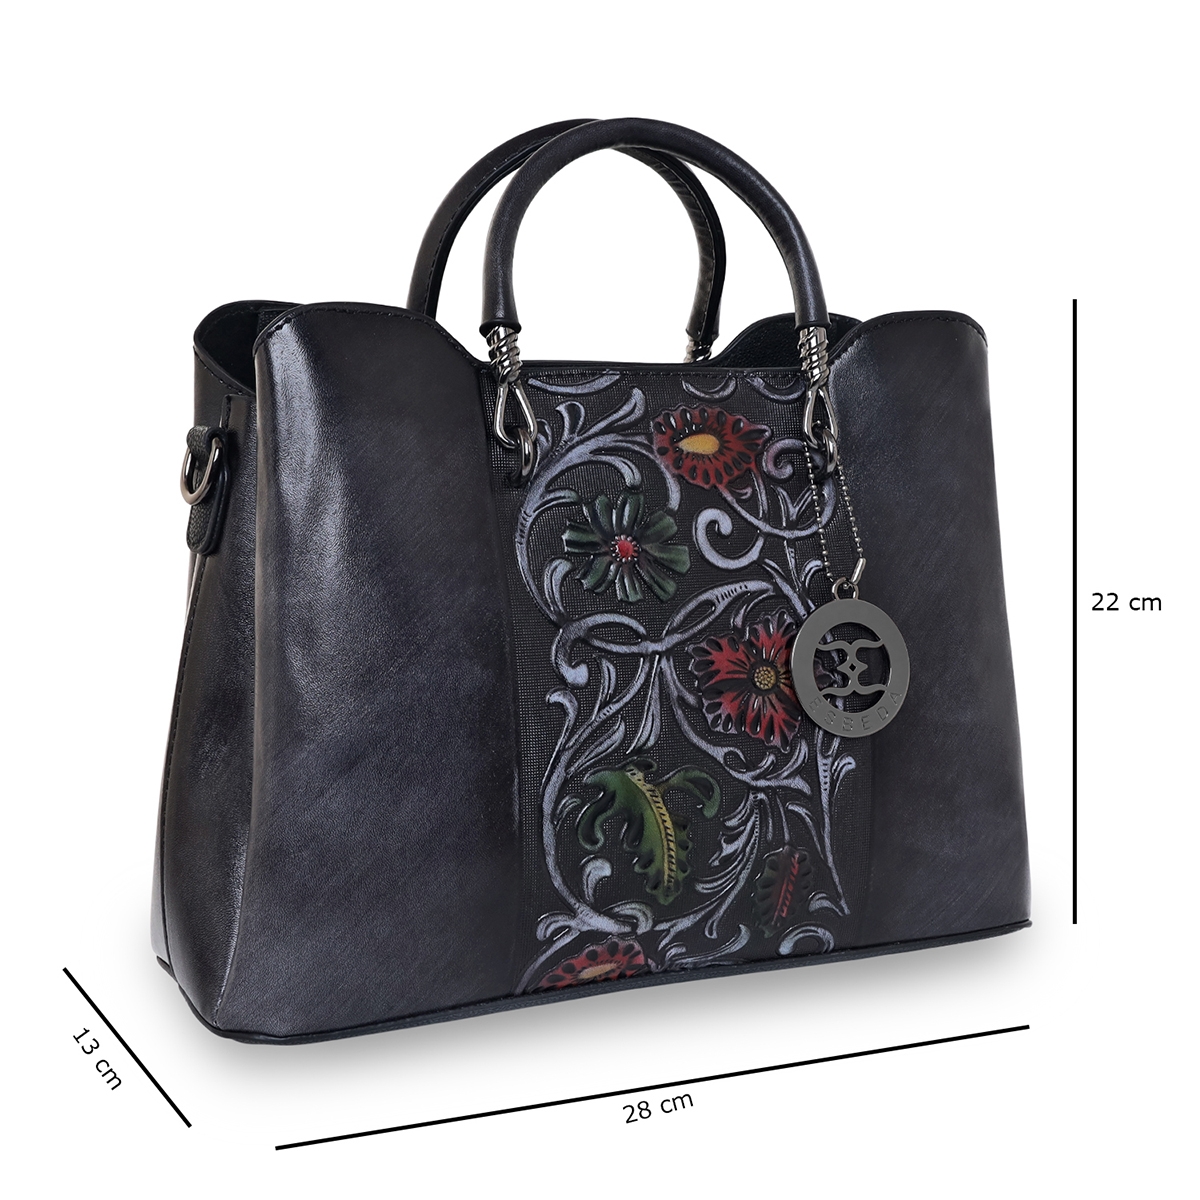 ESBEDA | ESBEDA Black Color Floral Embossed Handbag For Women 1